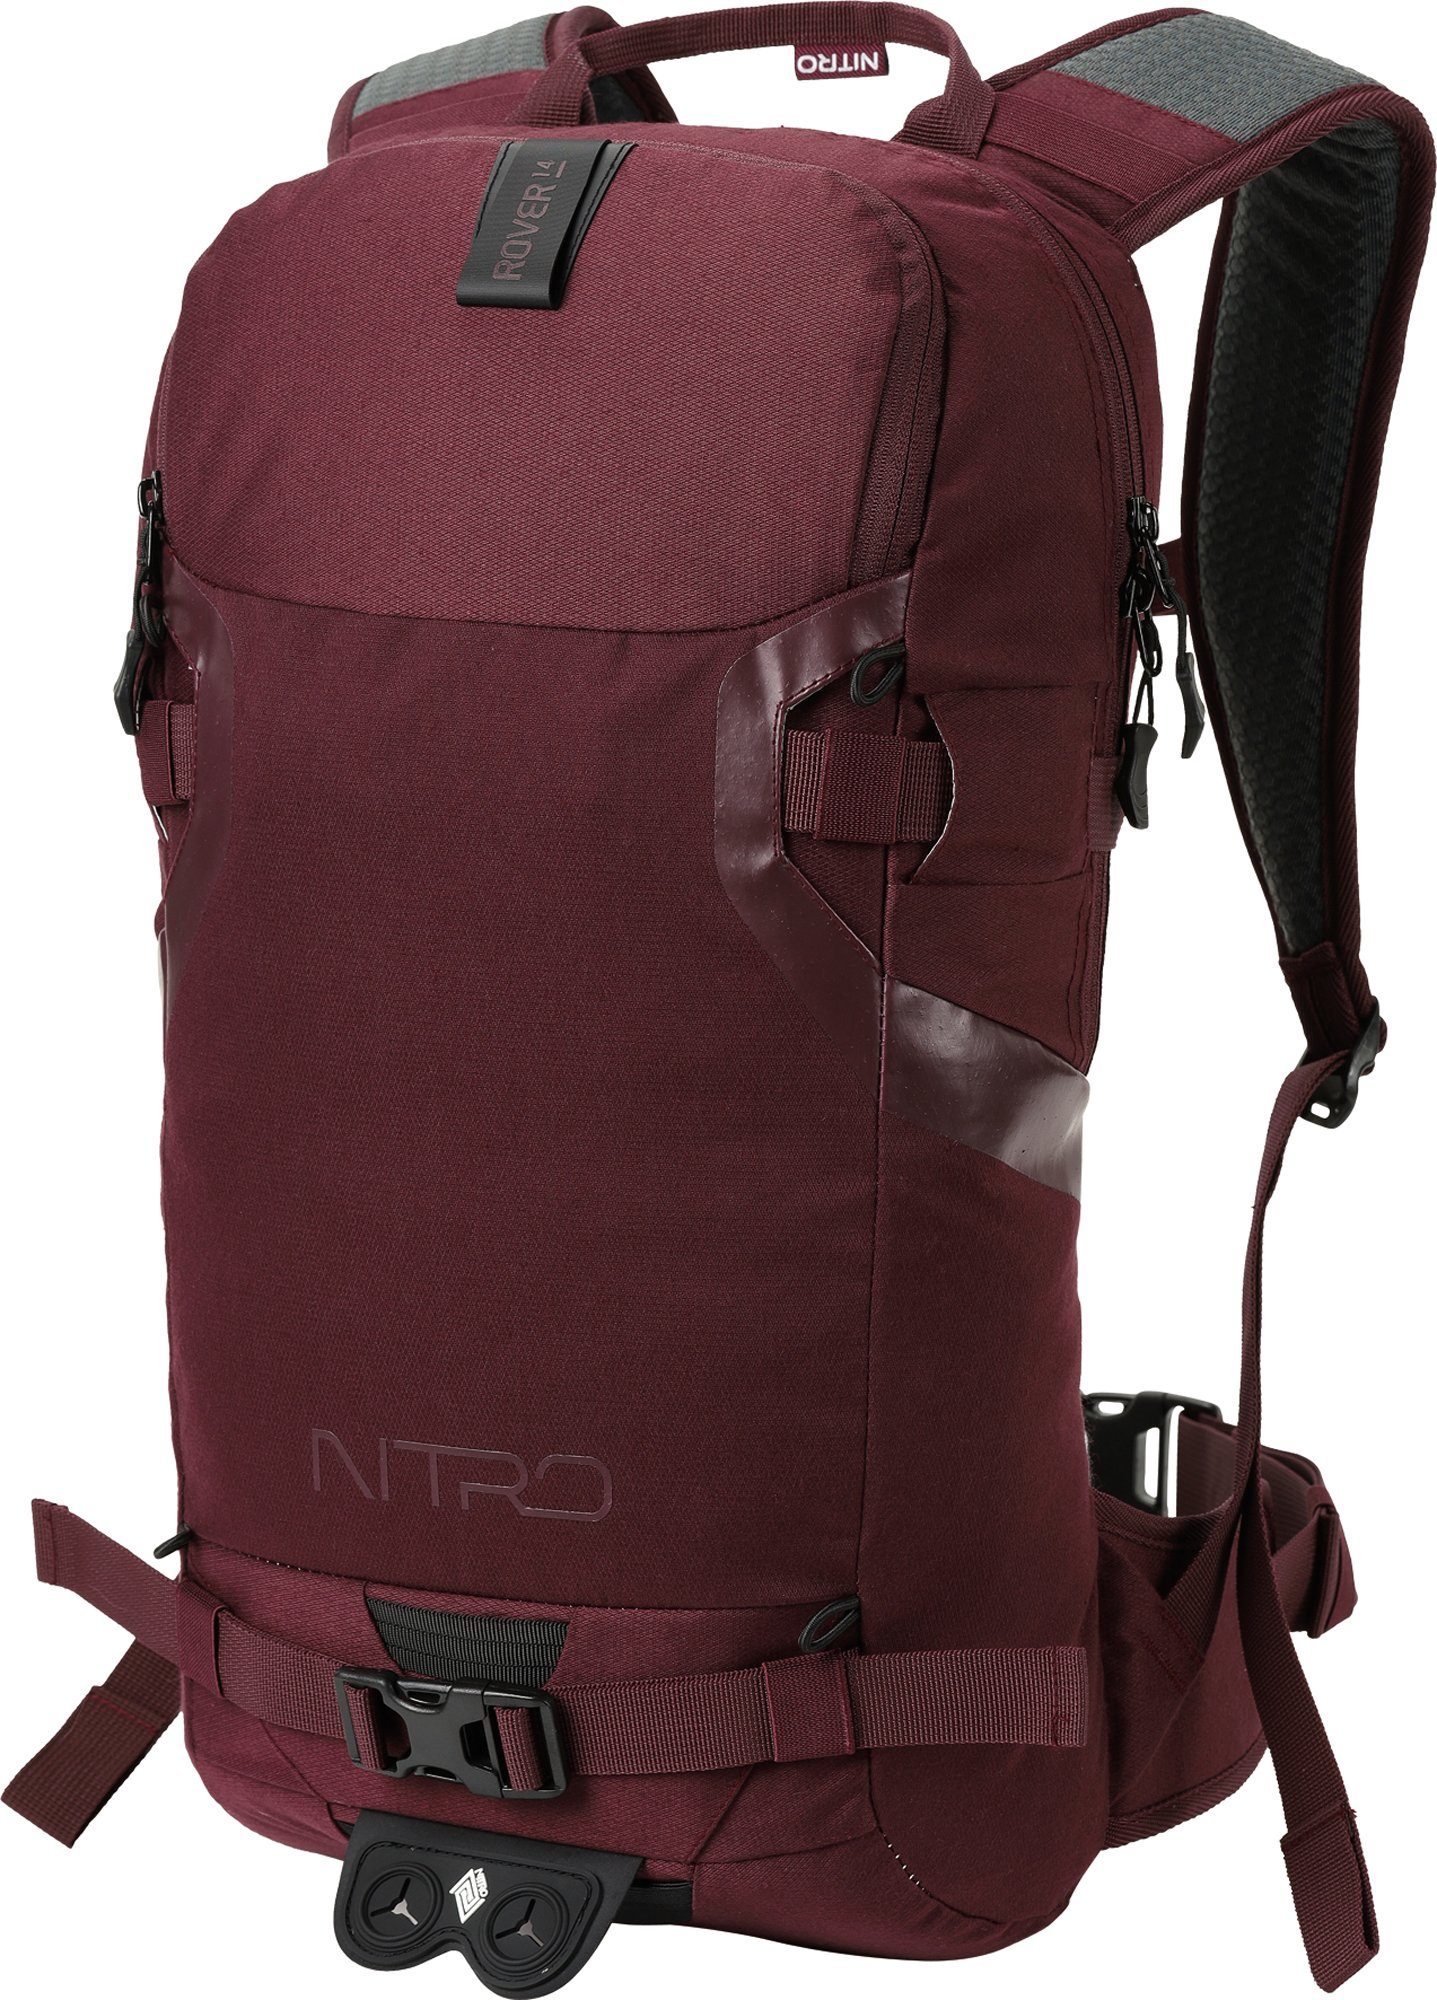 Trekkingrucksack Wintersport konzipiert den 14, speziell NITRO für Rover Wine,